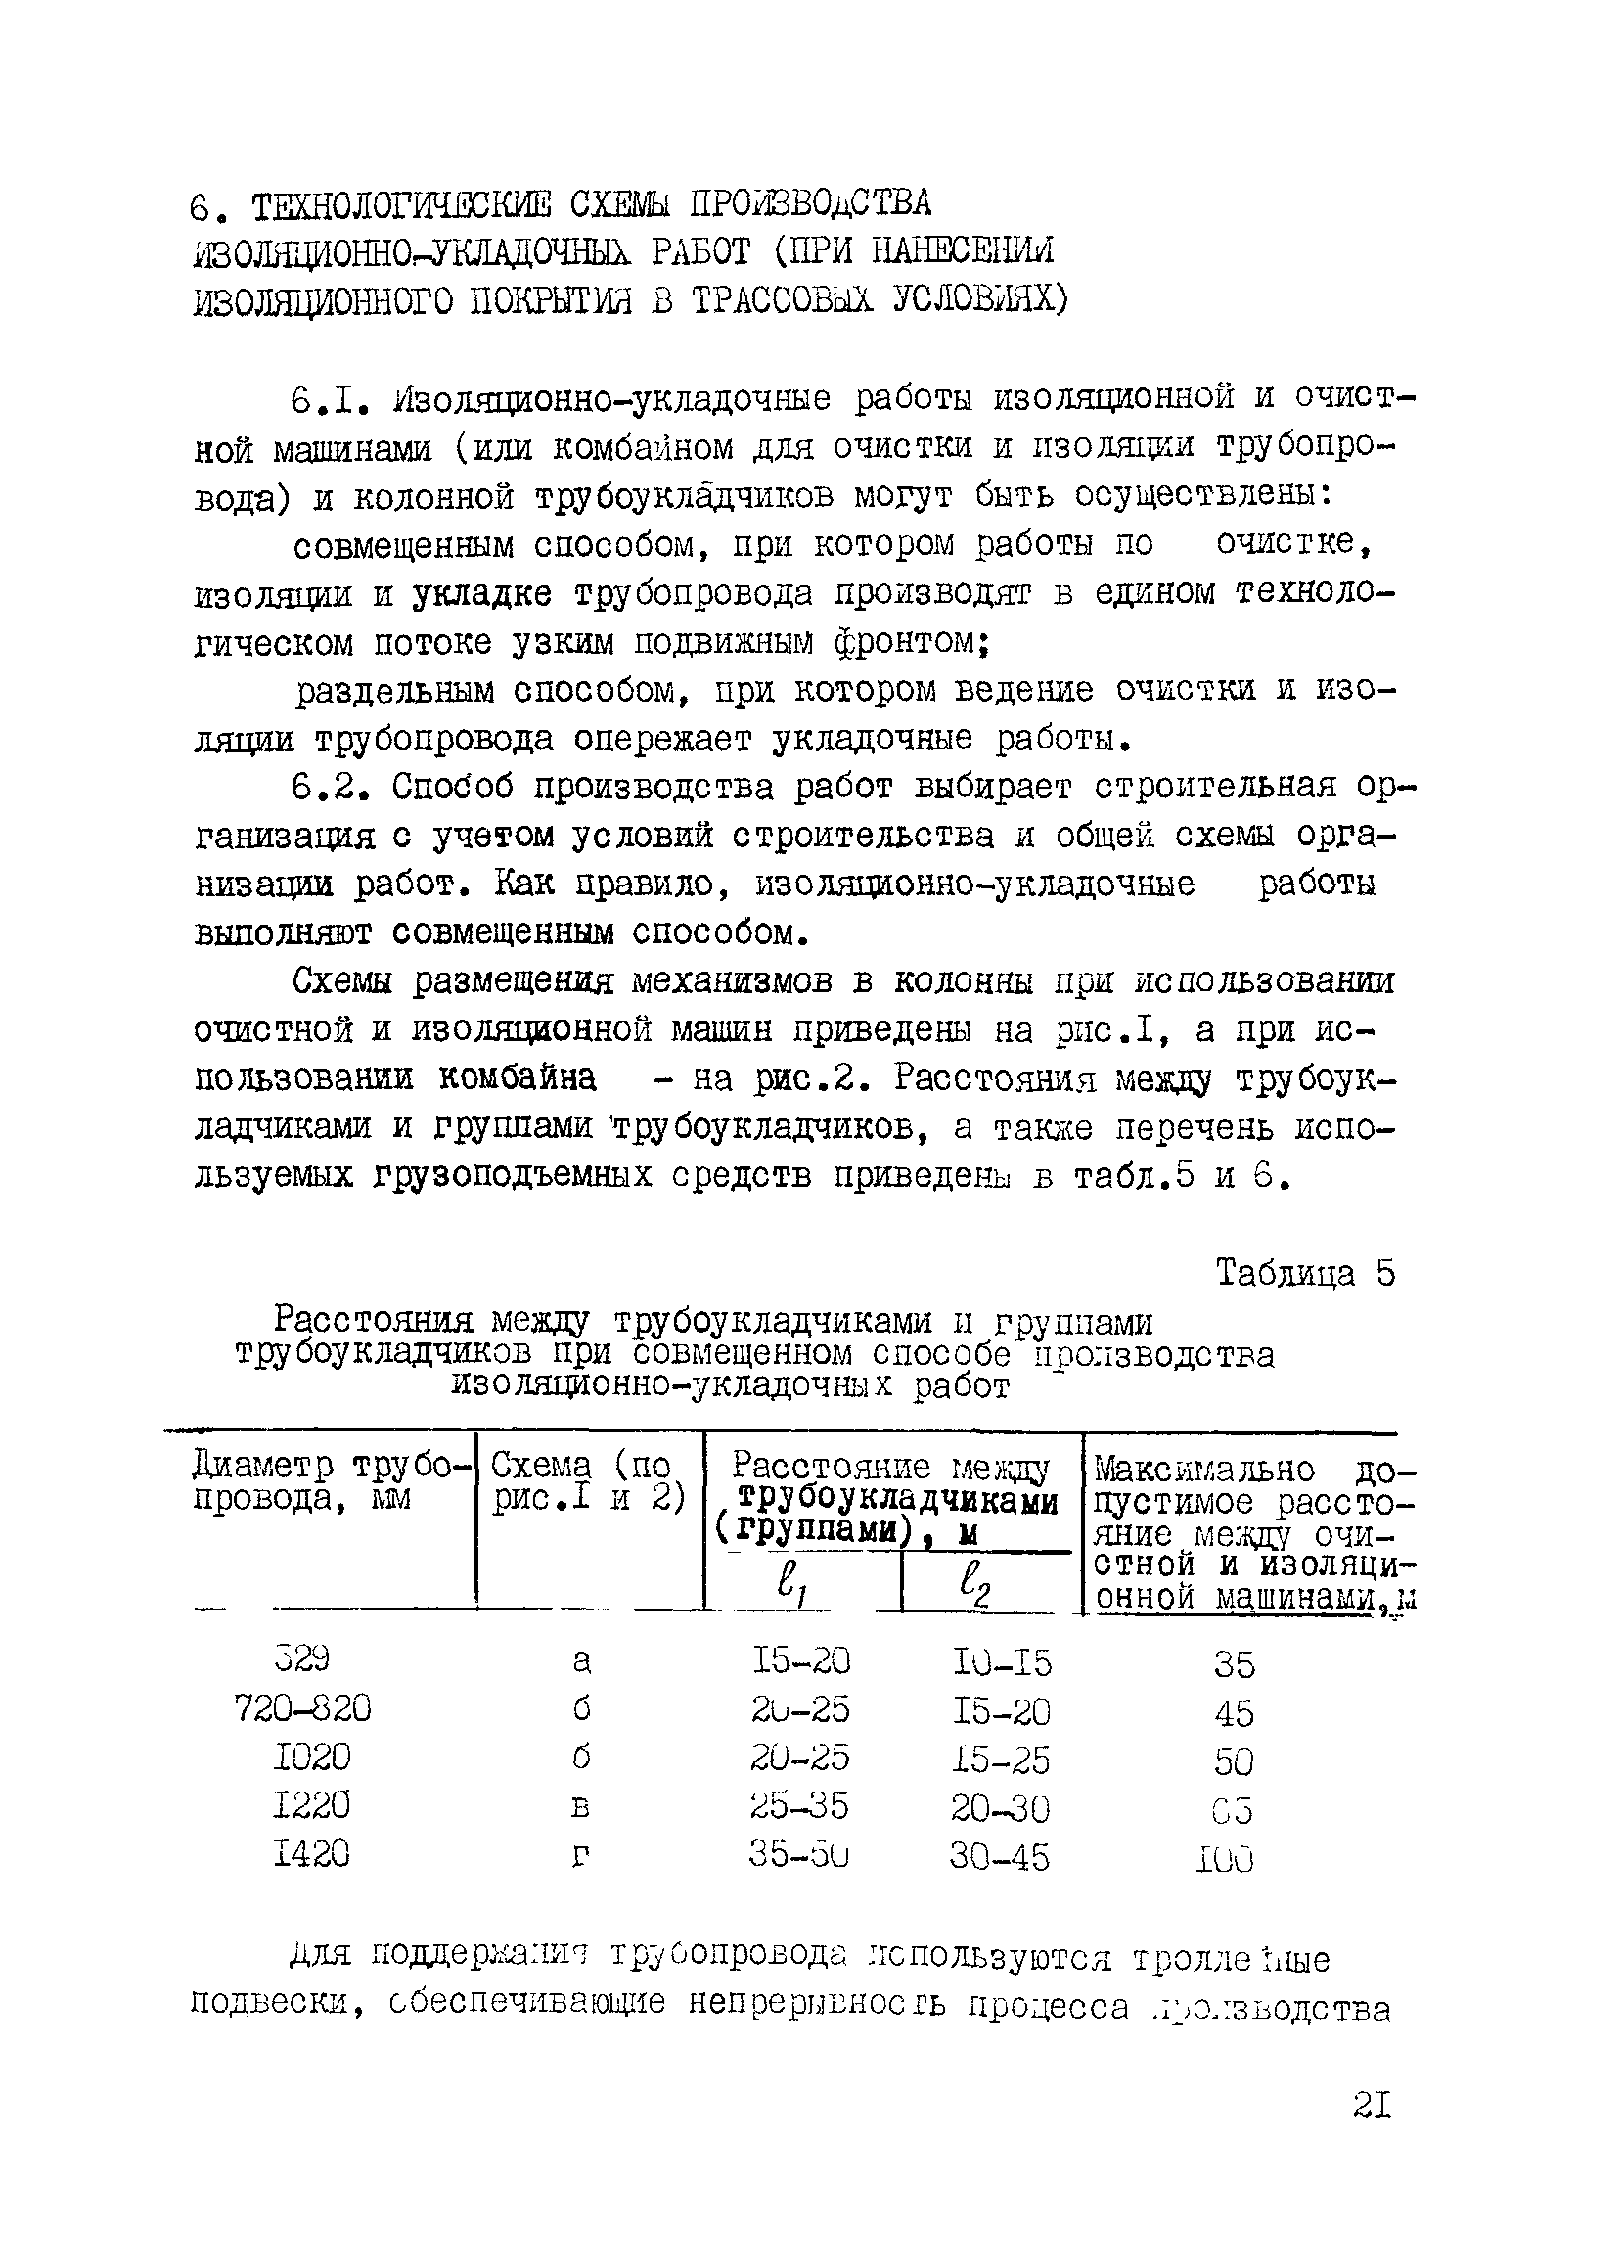 ВСН 2-149-82